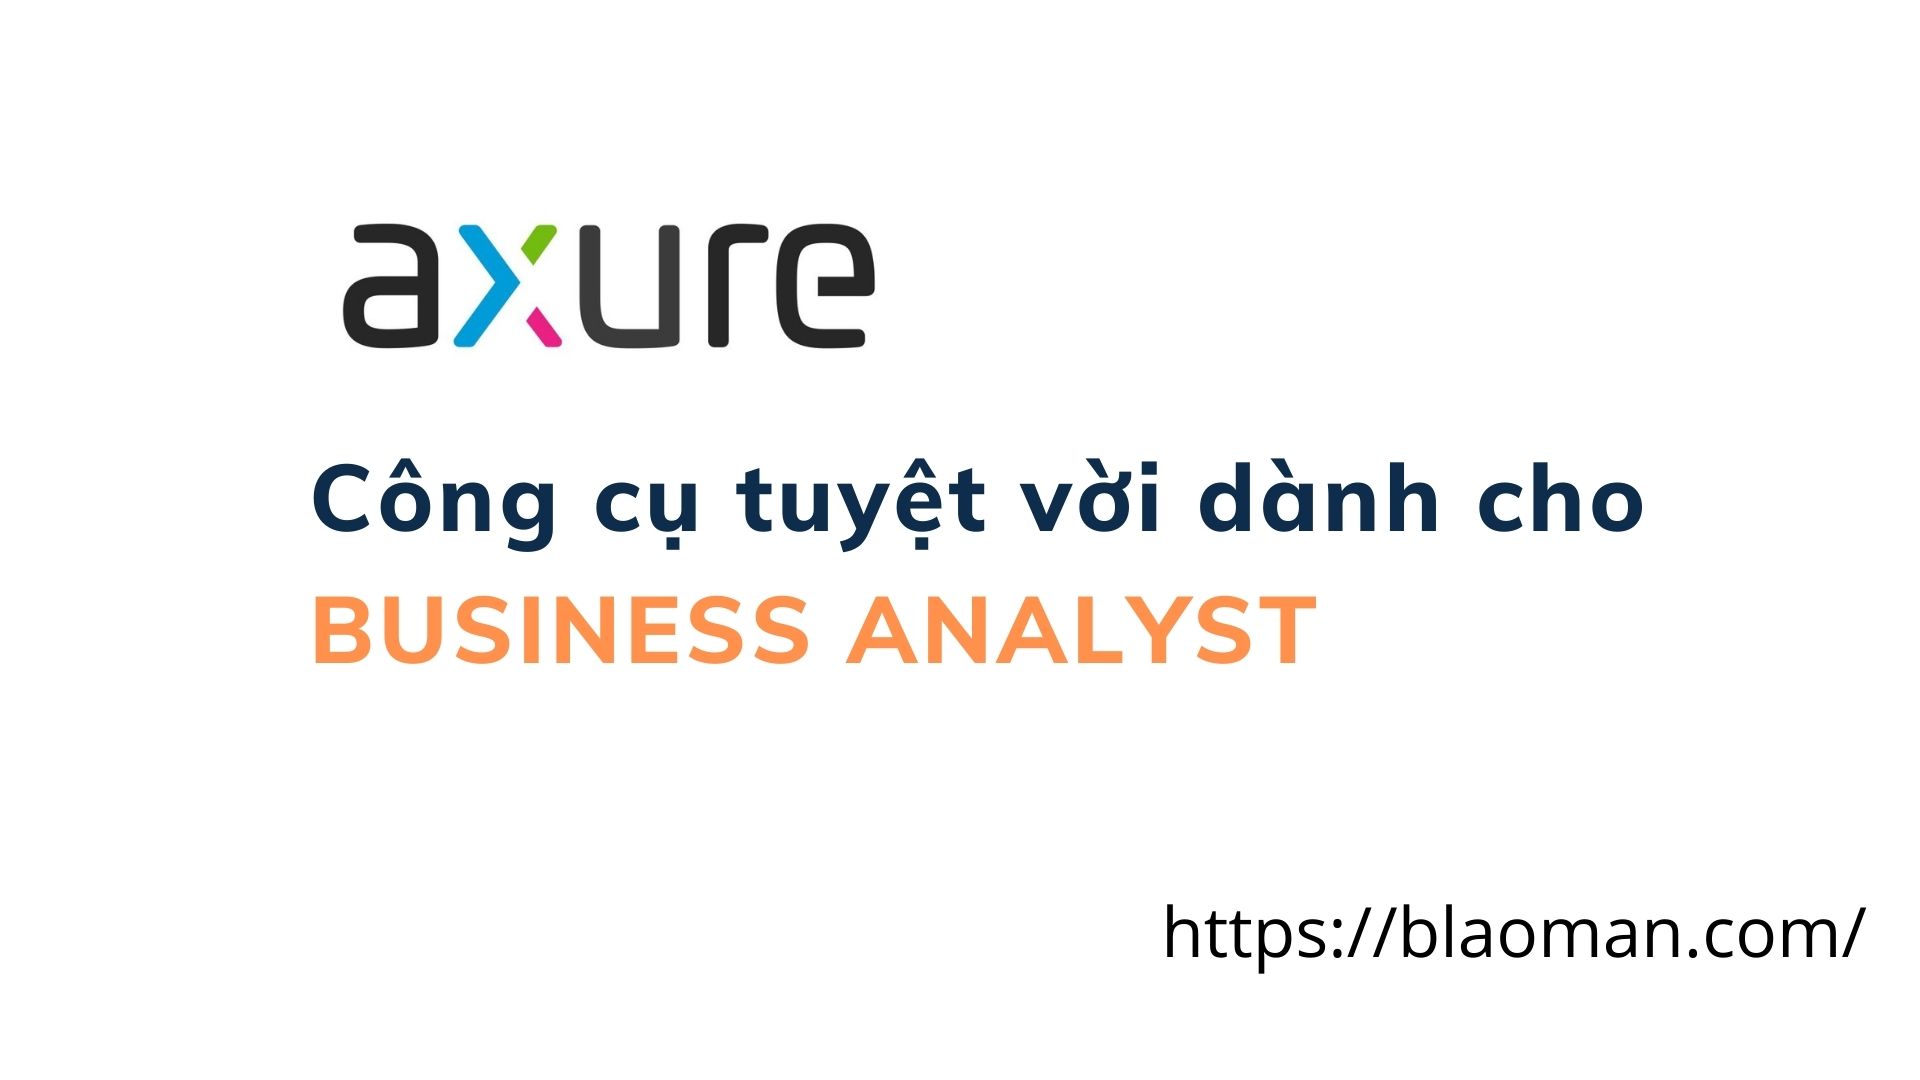 Axure là gì? Hướng dẫn cài đặt và sử dụng tool Axure dành cho business analyst, Ux designer